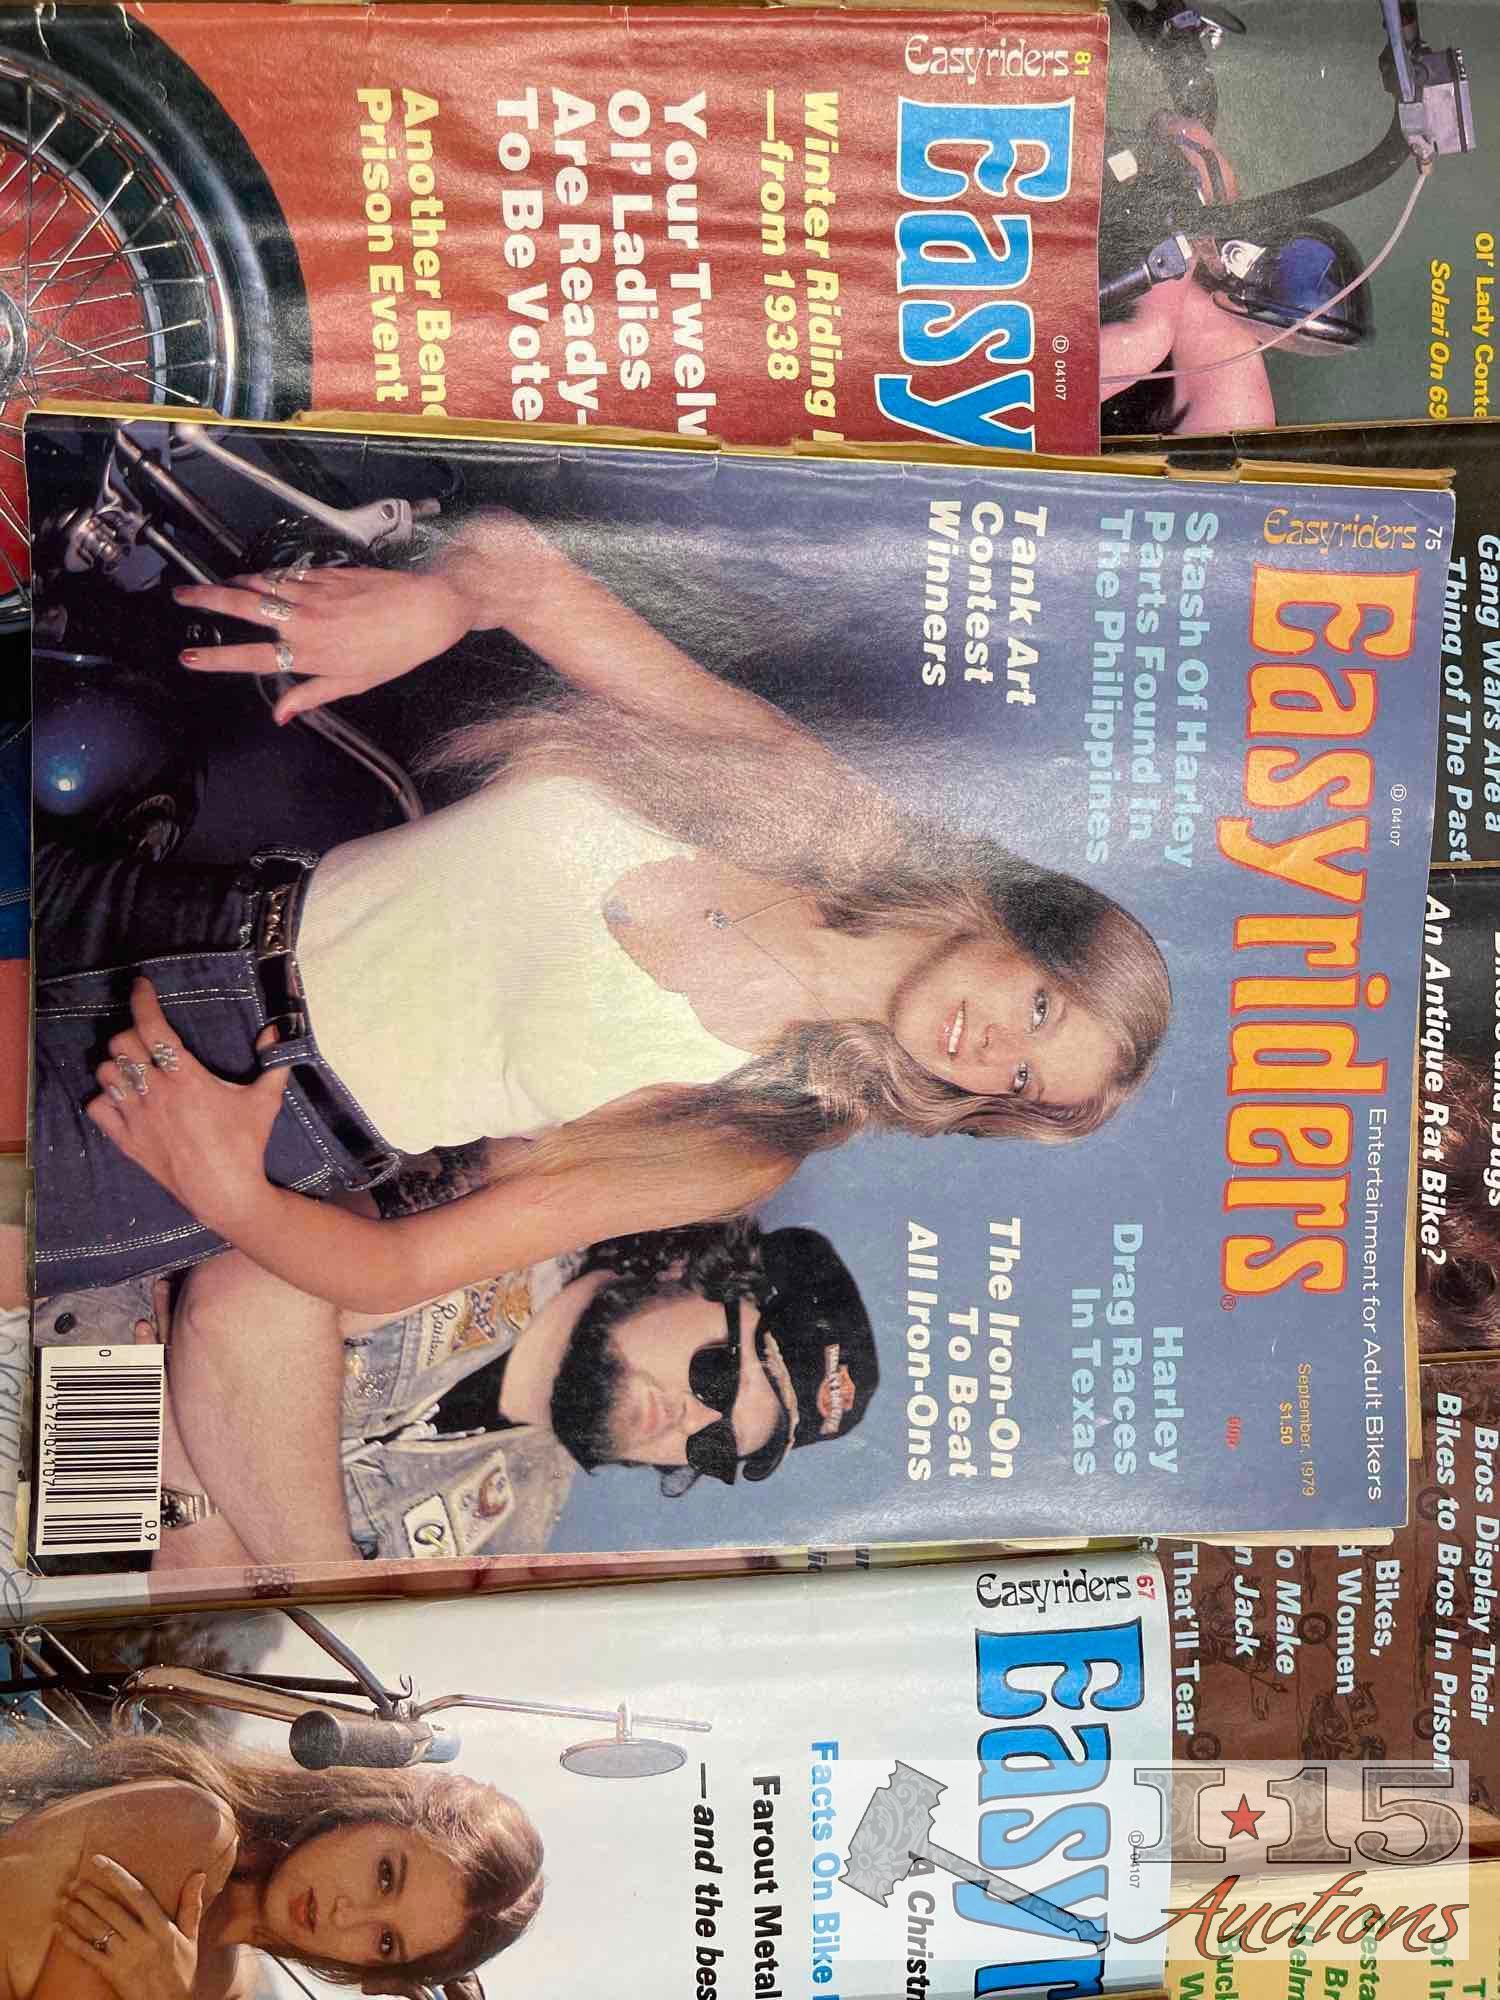 (46) Easyrider Adult Magazines